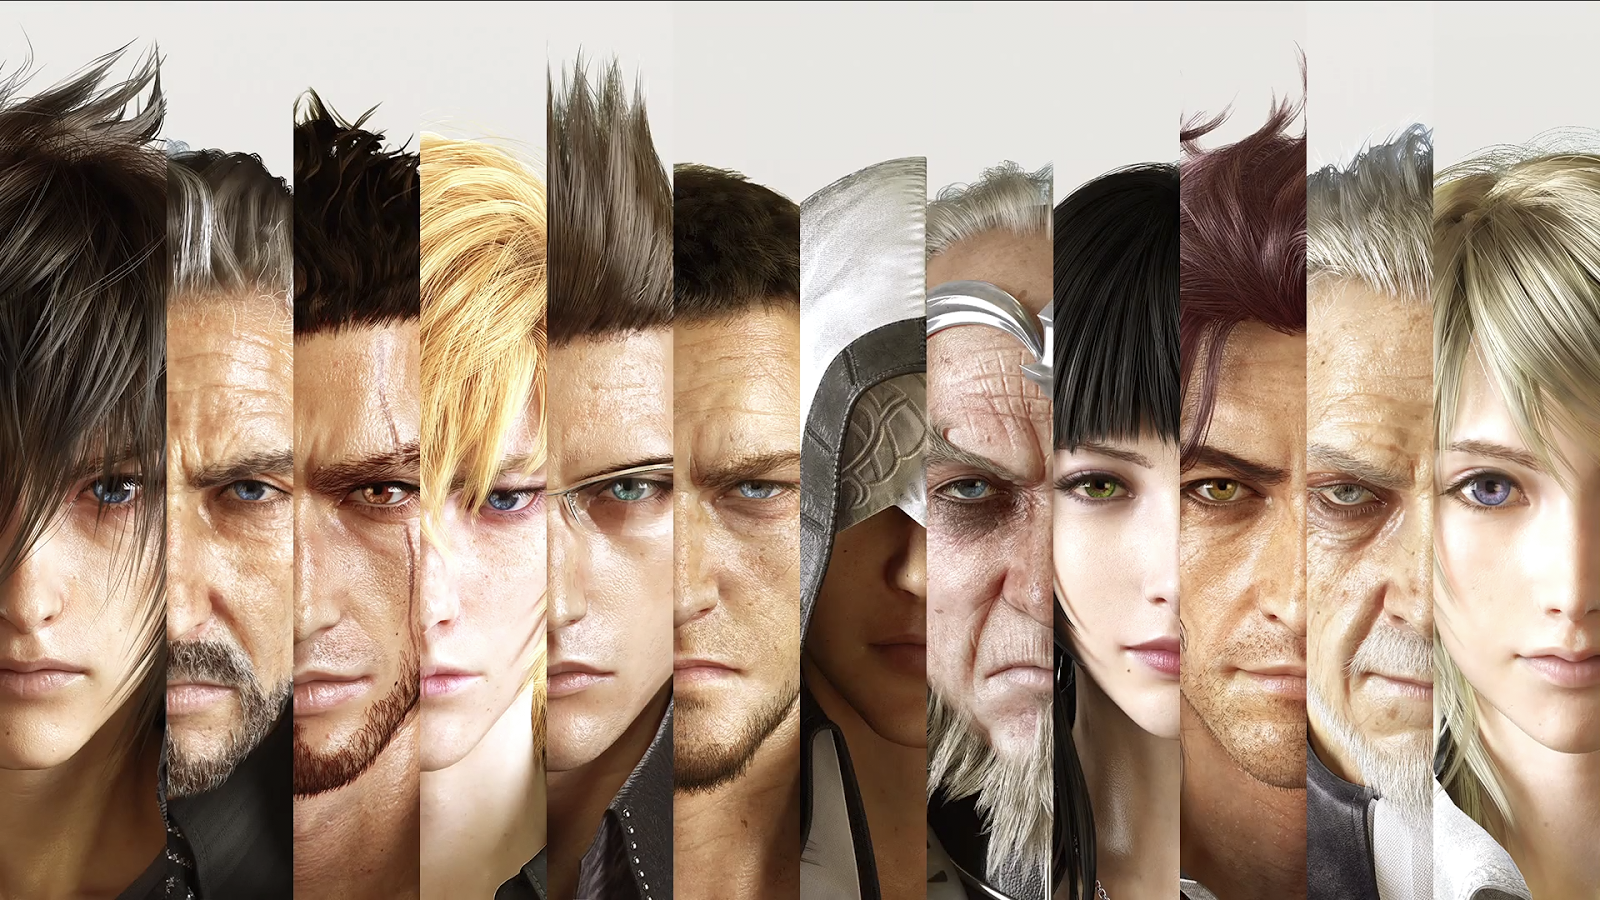 Dez personagens mais marcantes da franquia Final Fantasy - GameBlast